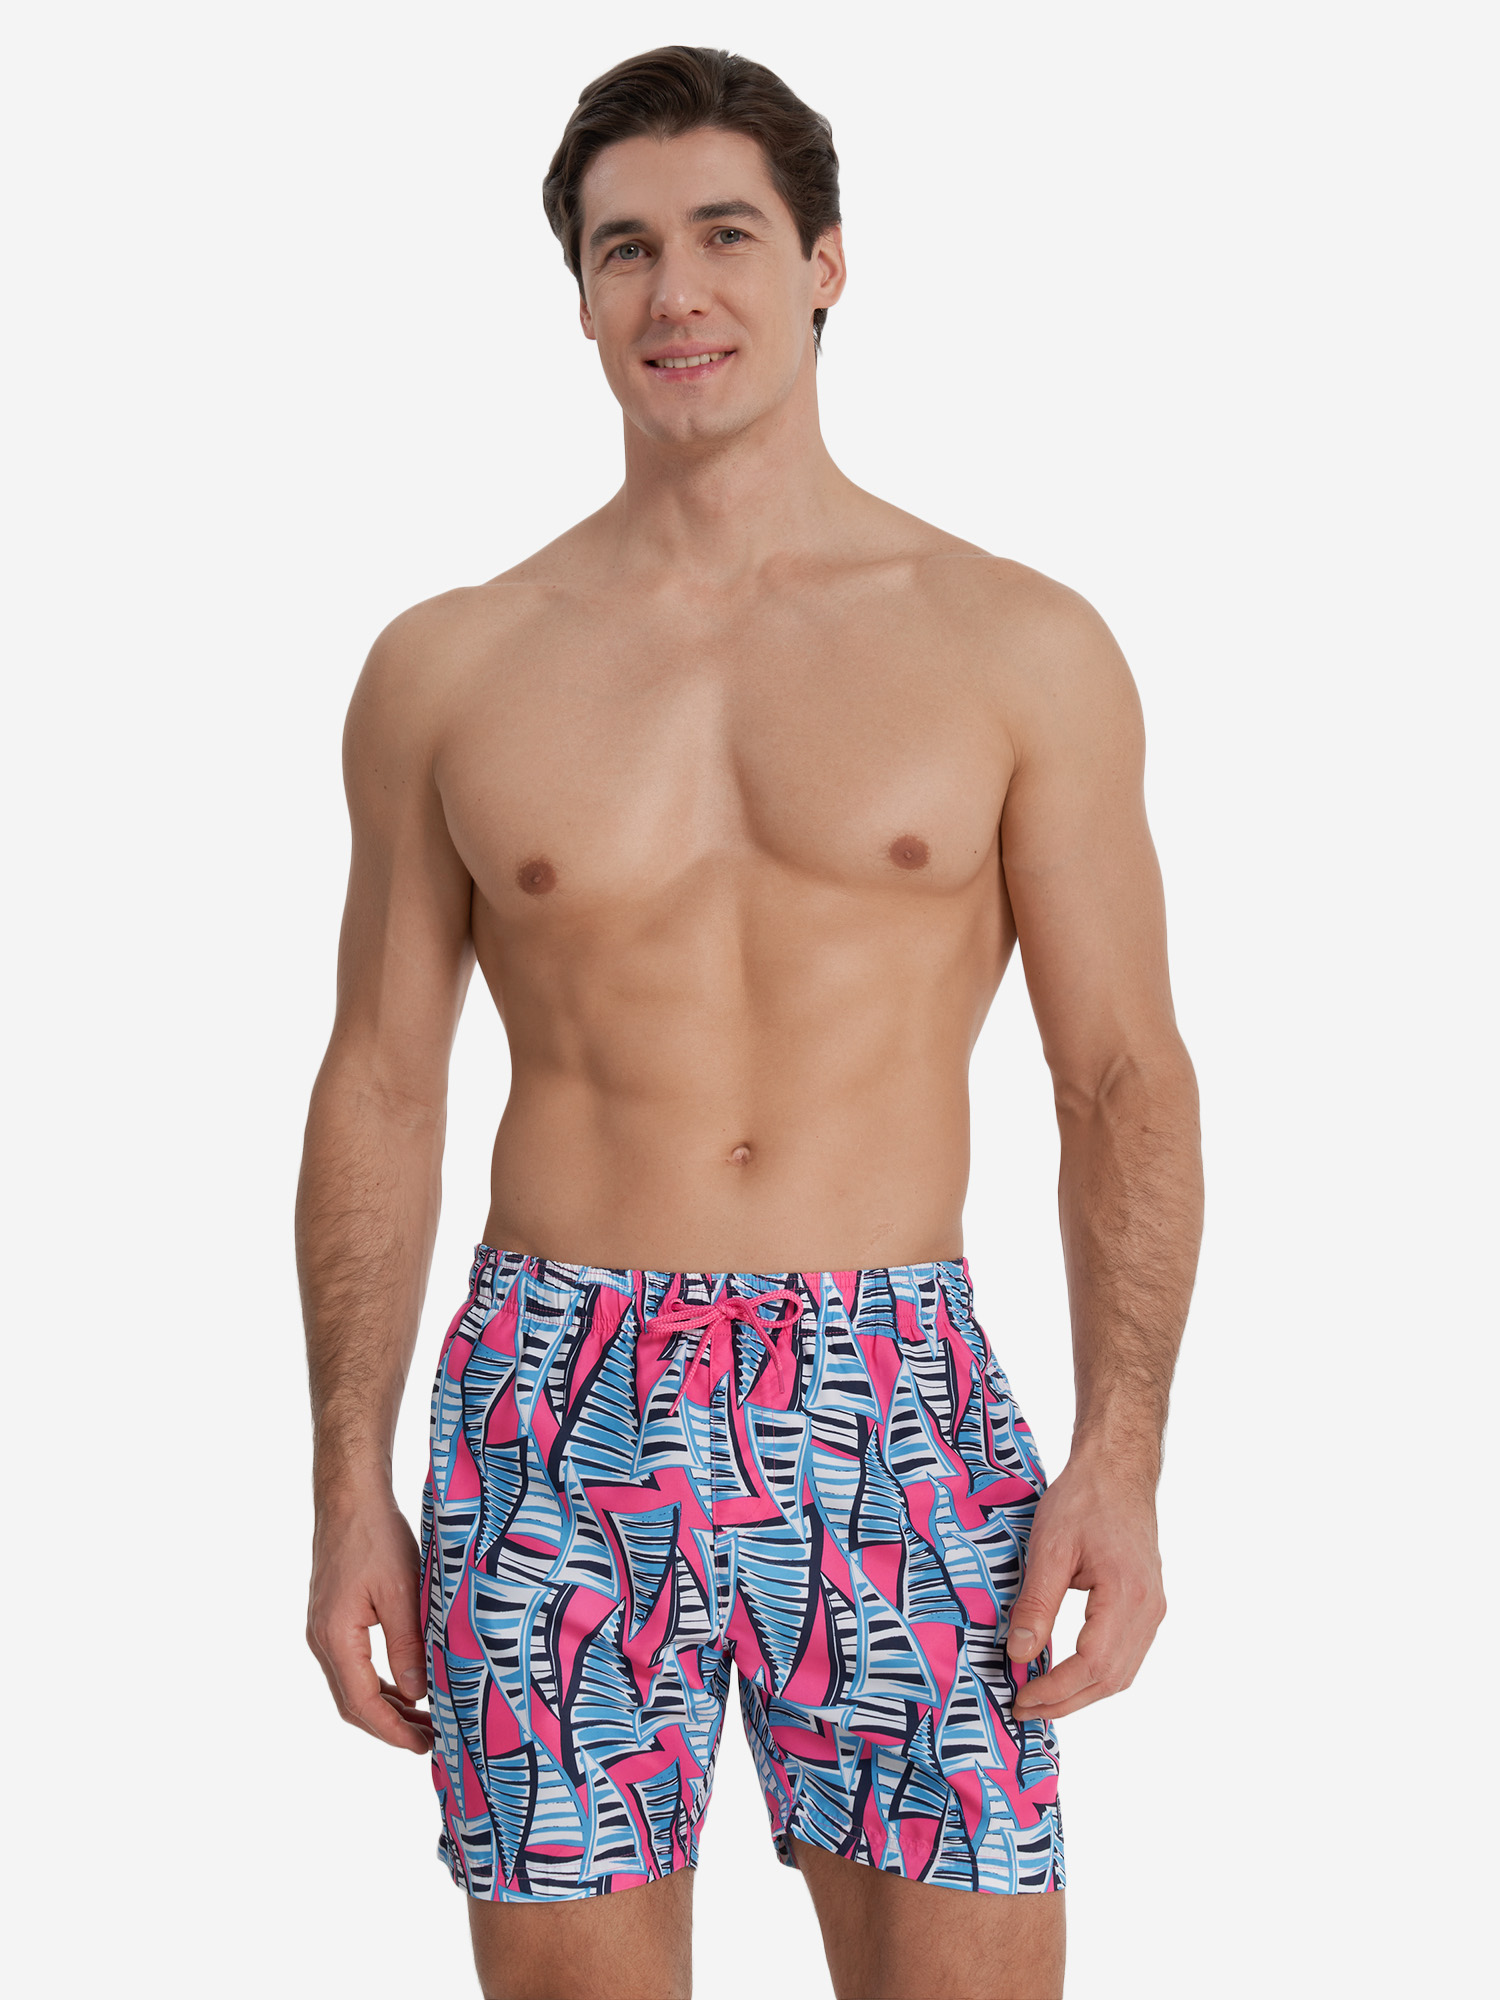 Шорты плавательные мужские Speedo Prime Leisure, Розовый шапочка для плавания speedo polyester cap jr 88 710111587 розовый